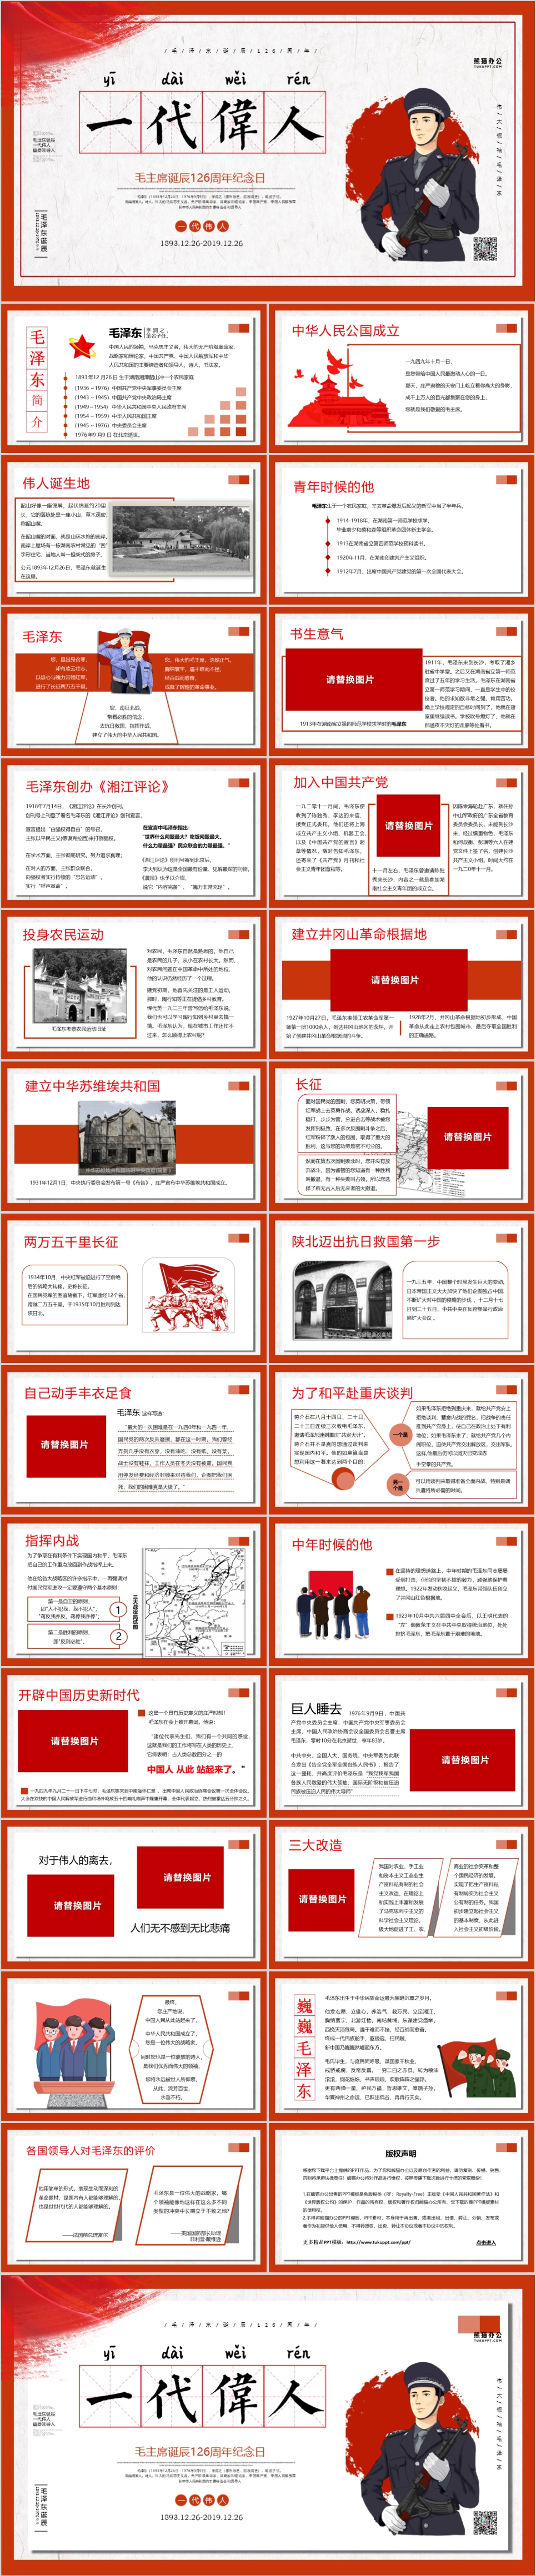 纪念毛泽东同志诞辰126周年PPT模板